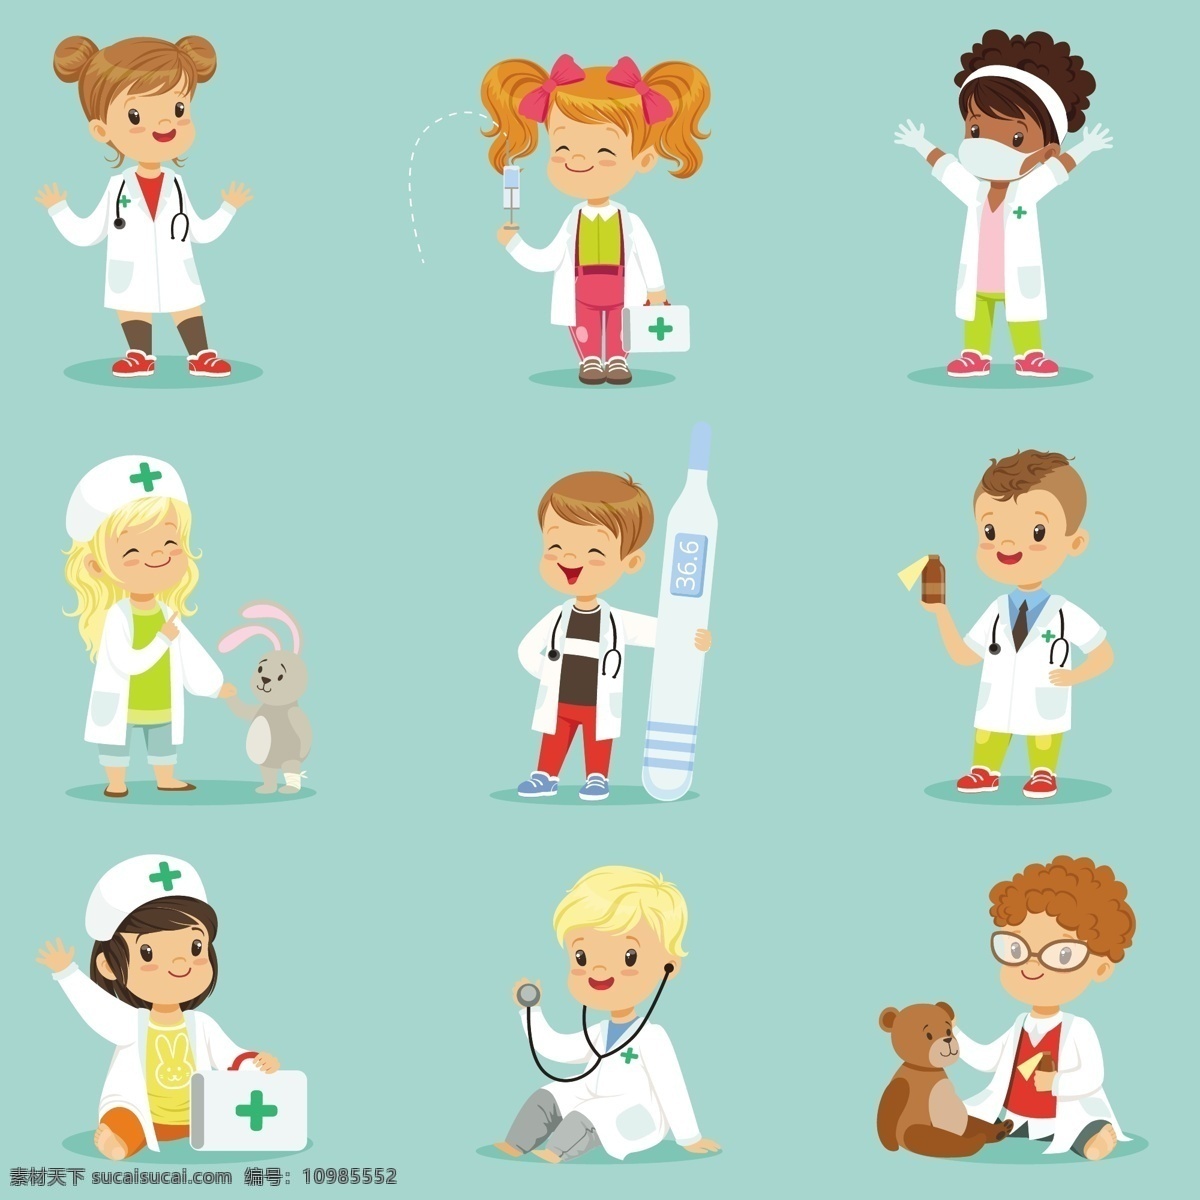 款 可爱 卡通 医护 人员 矢量 男孩 女孩 医生 护士 职业 人士 人物 兽医 动物 温度计 急救箱 卡通人物 动漫动画 动漫人物